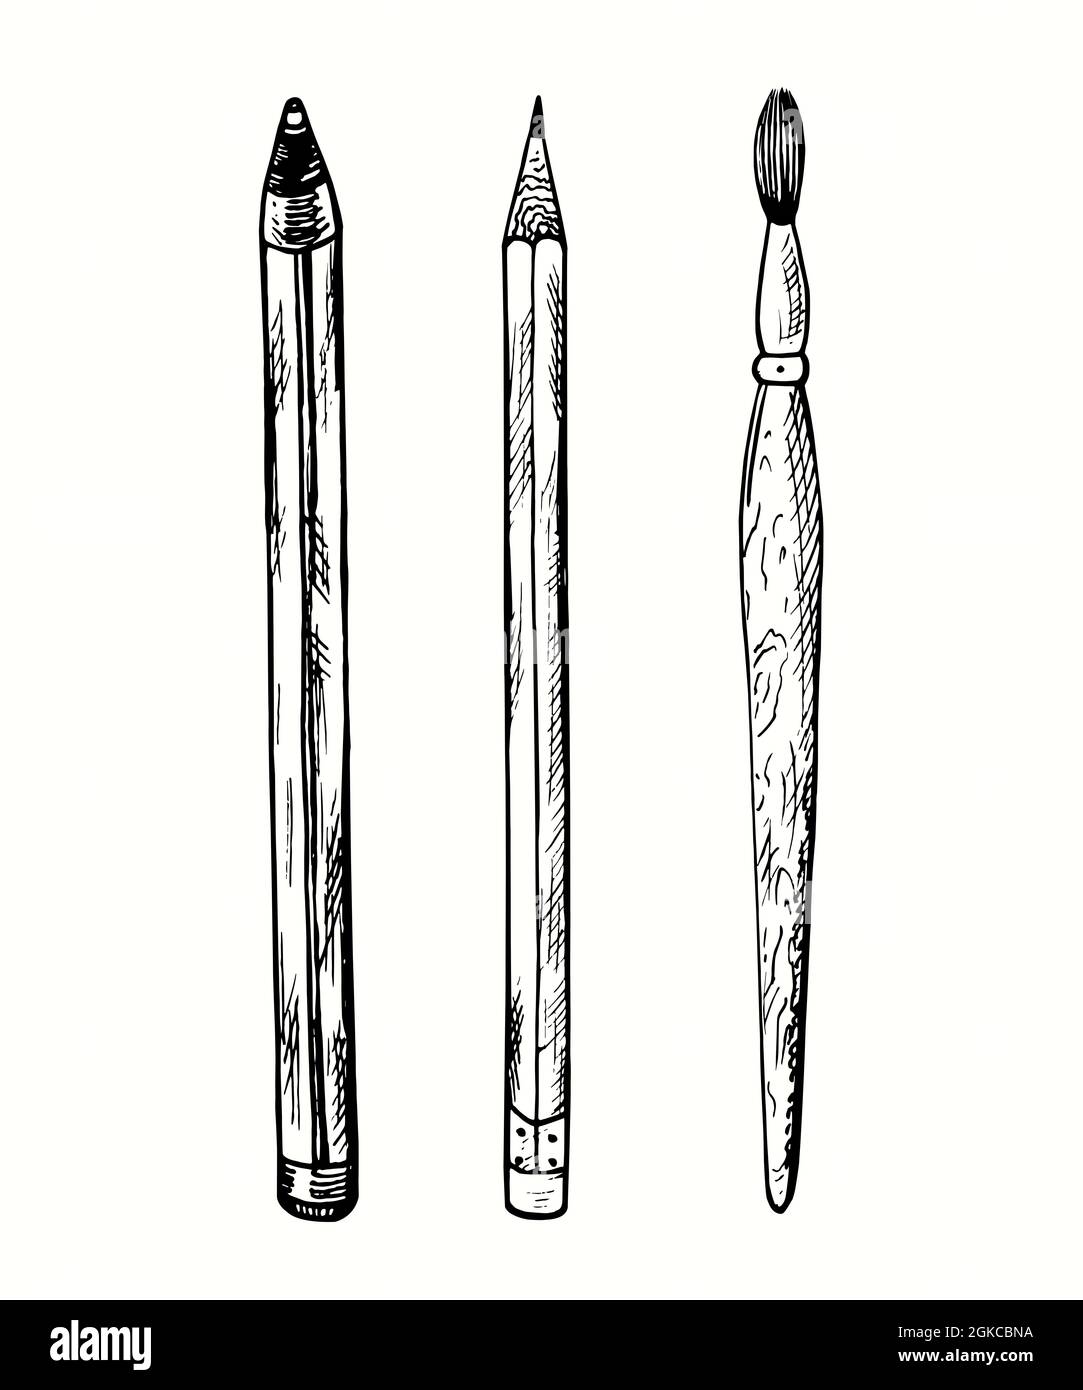 Handgezeichneter Stift, Bleistift, Pinsel Sammlung. Tusche schwarz-weiß  Zeichnung Illustration Stockfotografie - Alamy